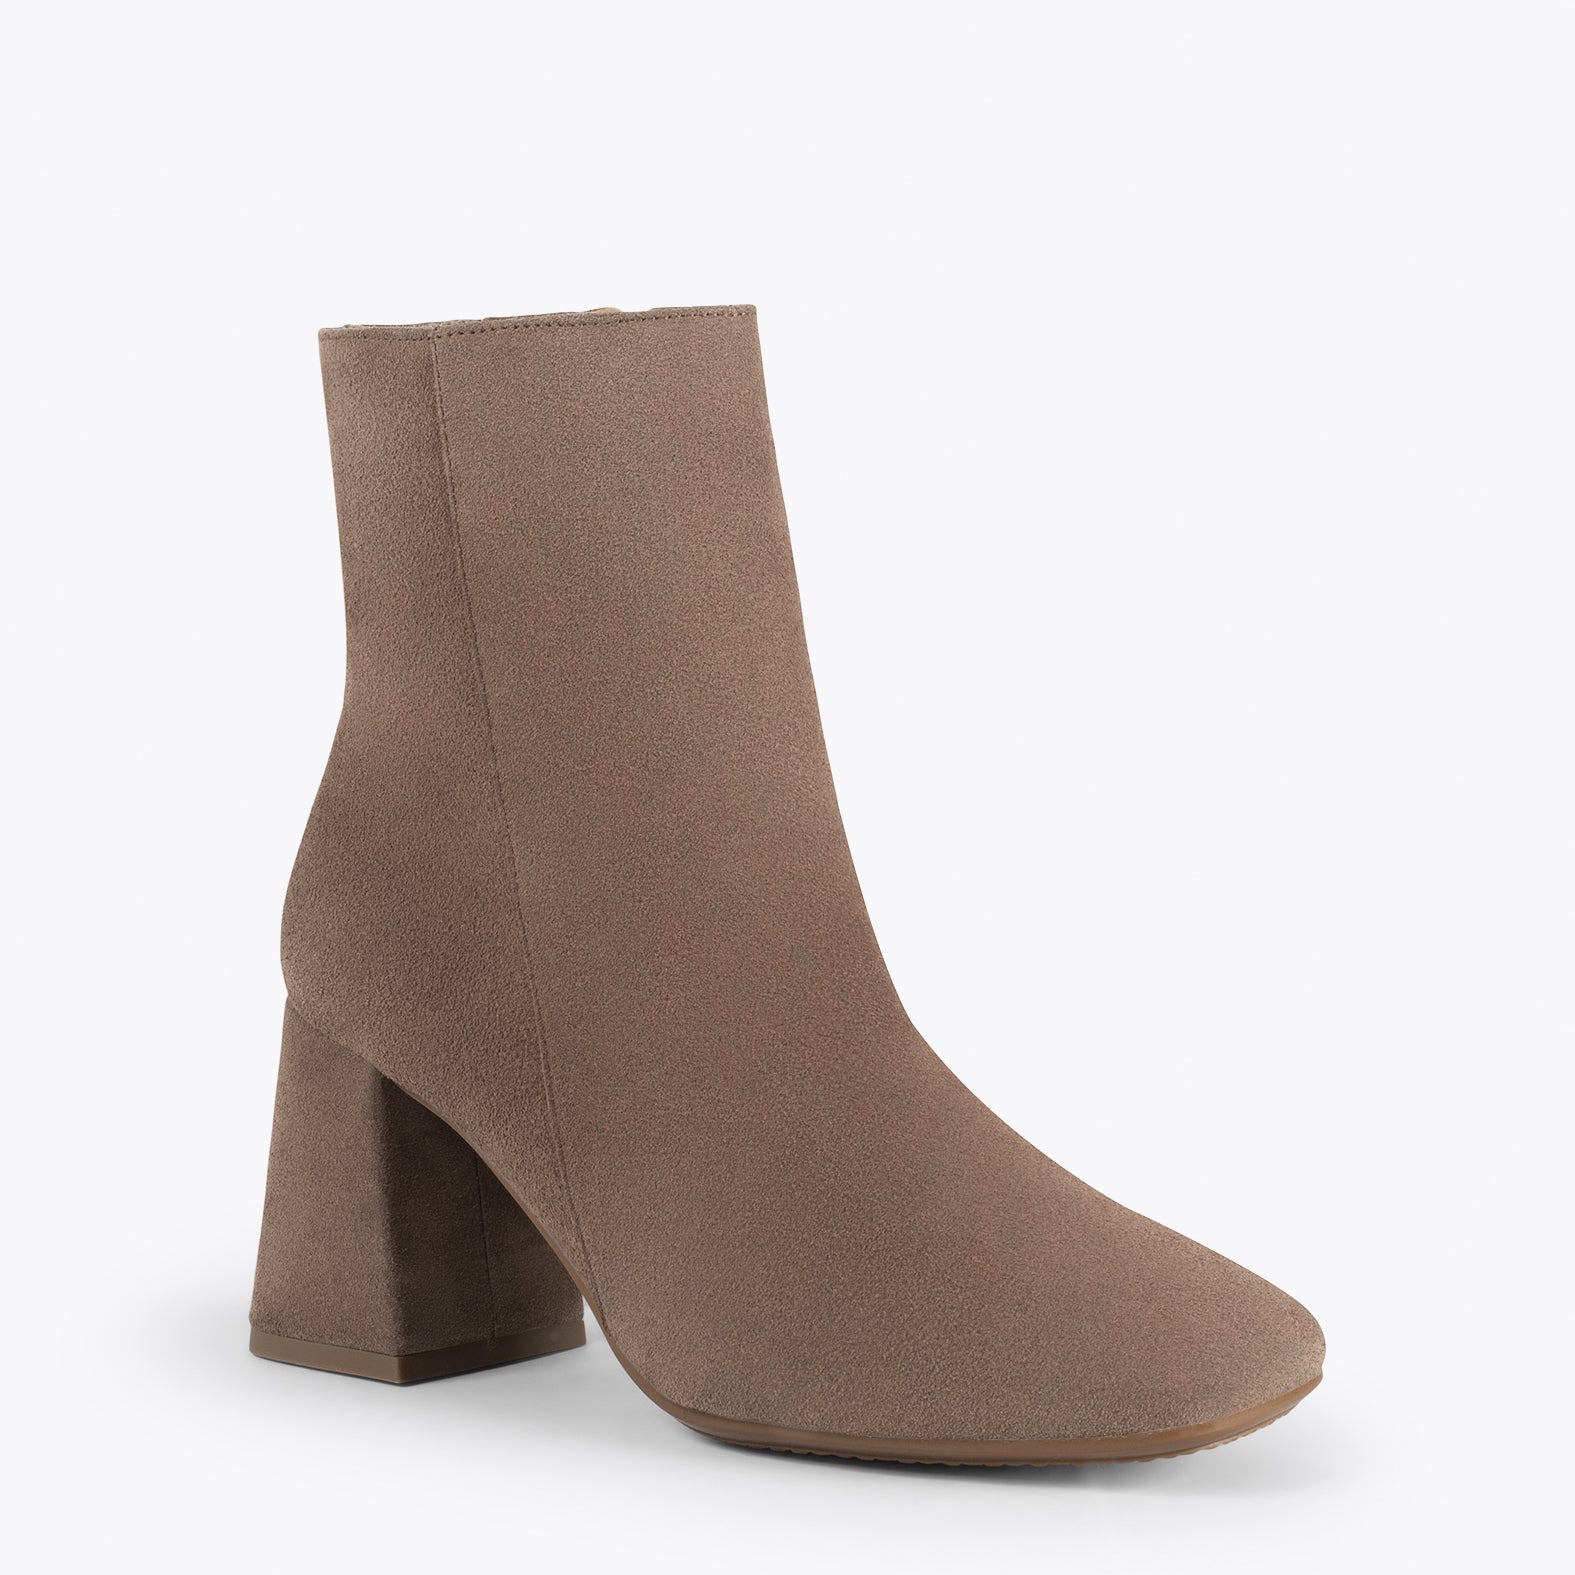 PARIS – TAUPE square toe bootie with block heel